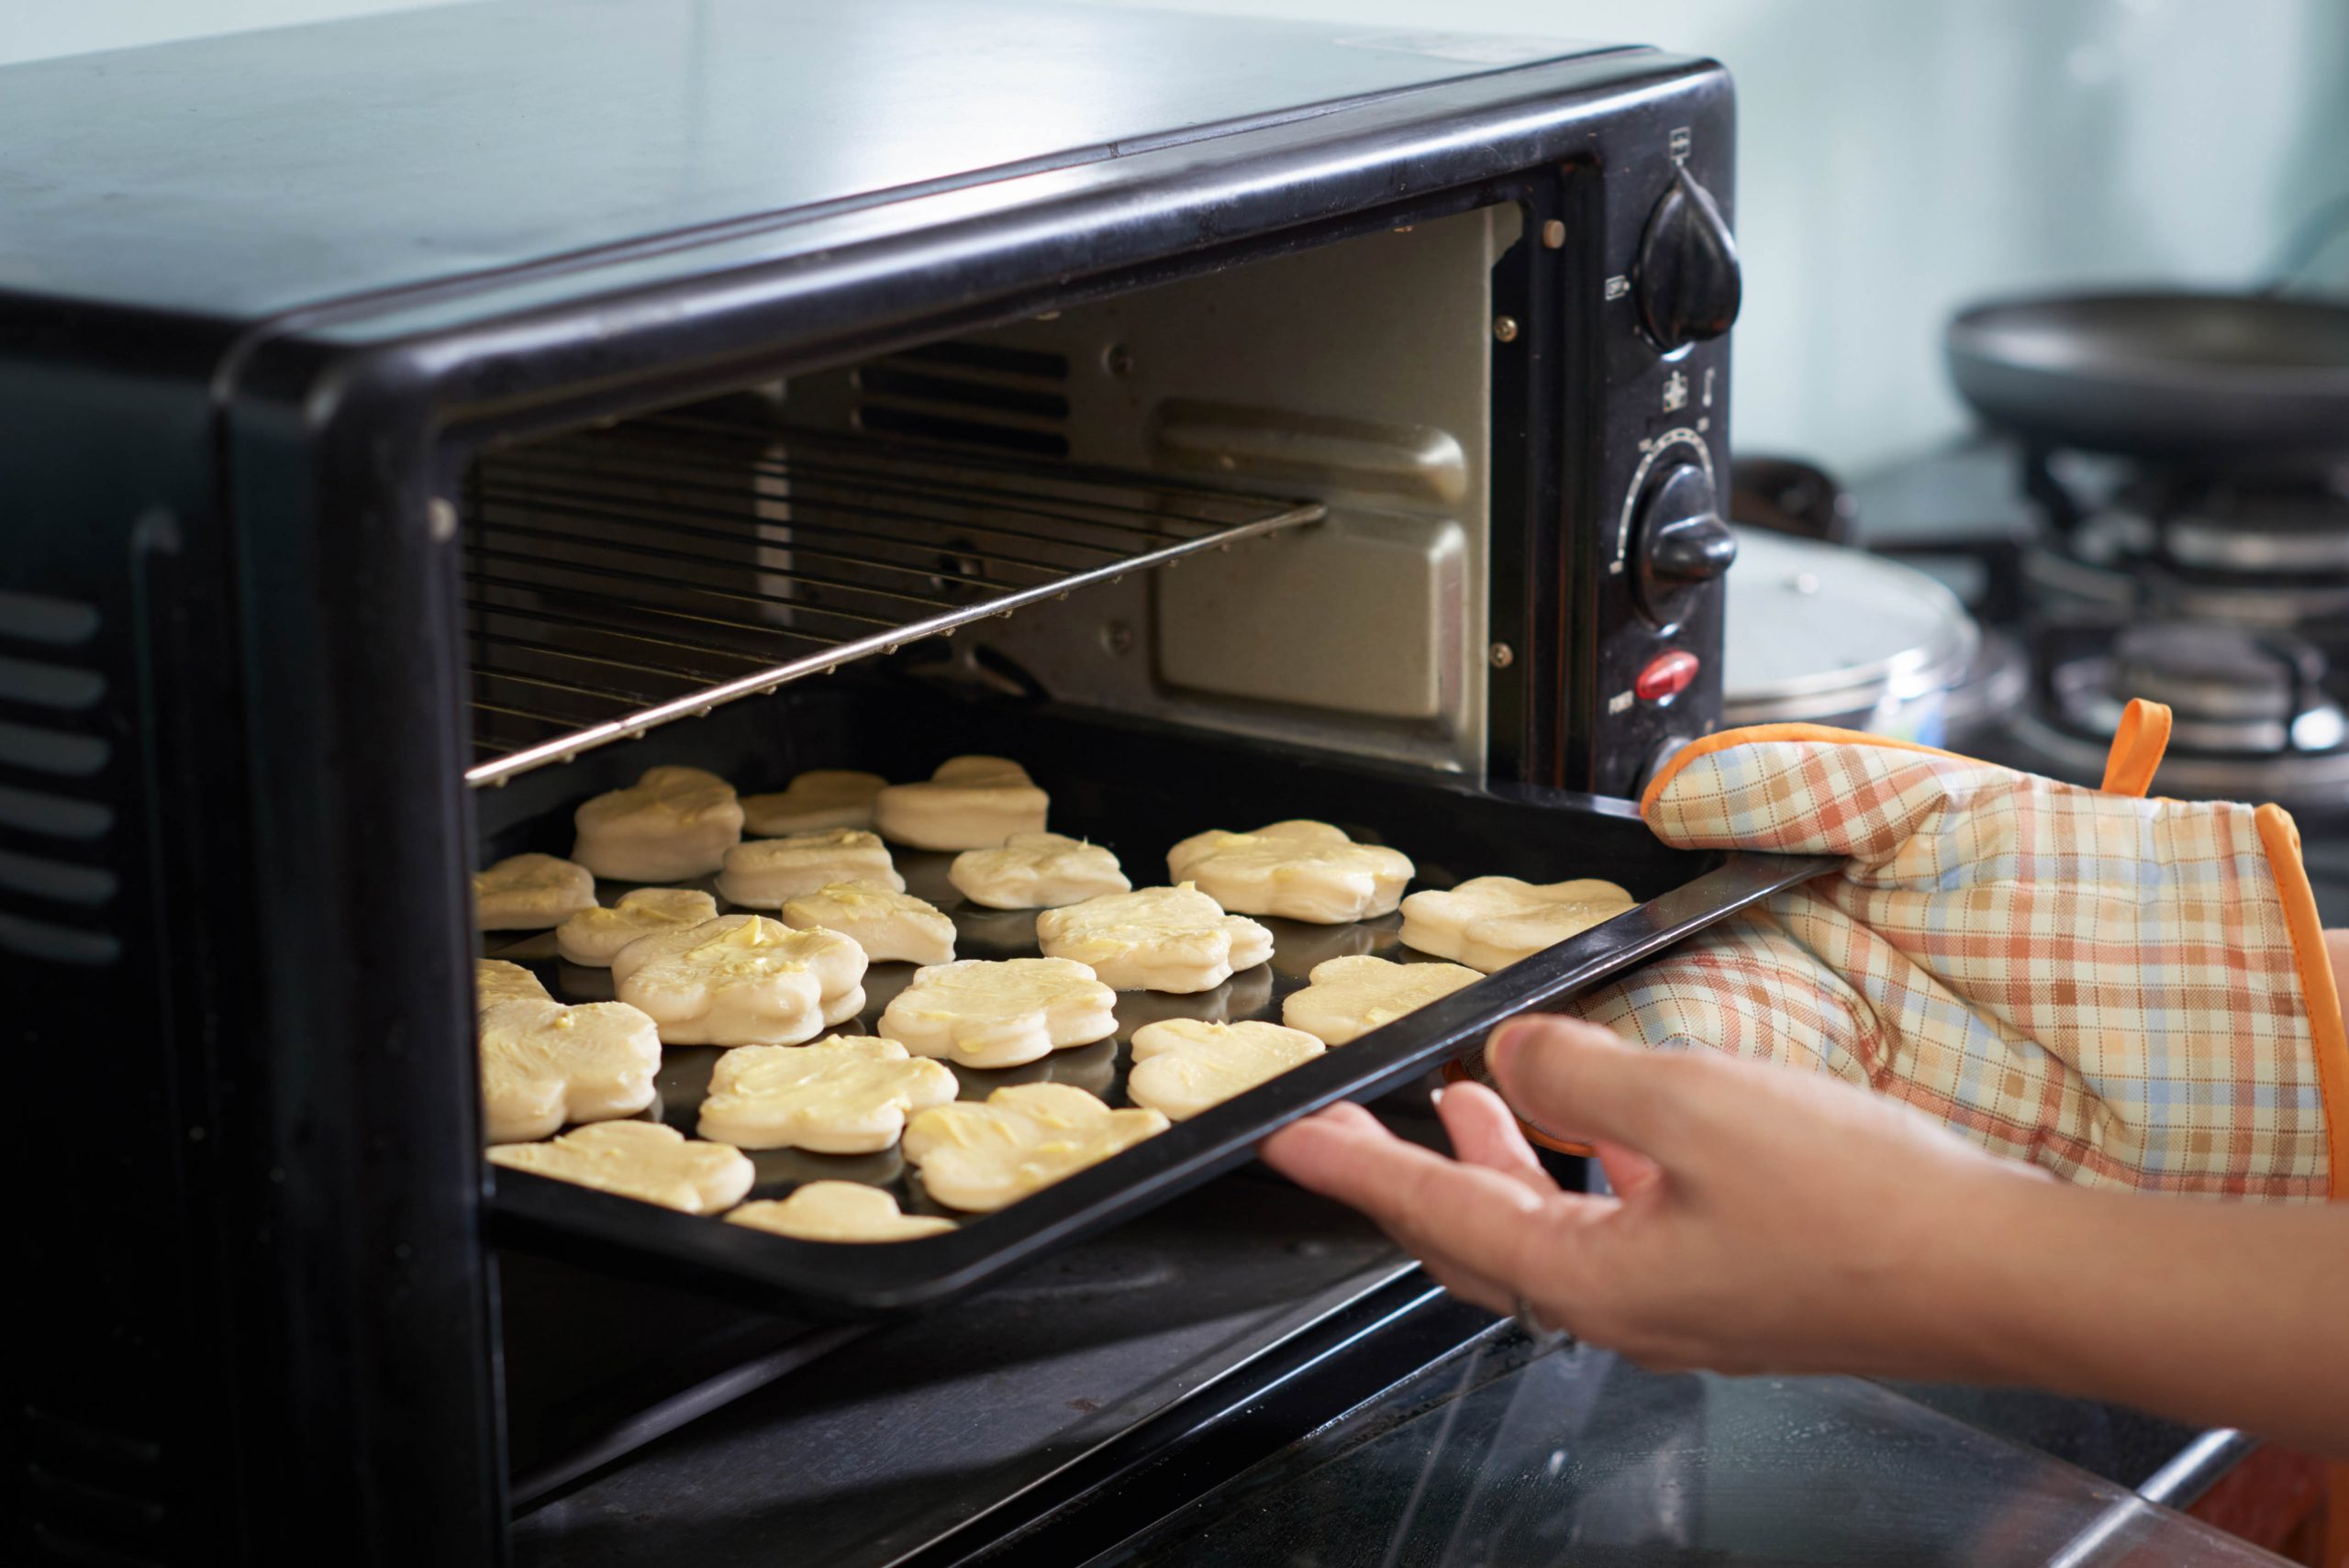 .ידיים מוציאות תבנית של עוגיות מוכנות מהתנור